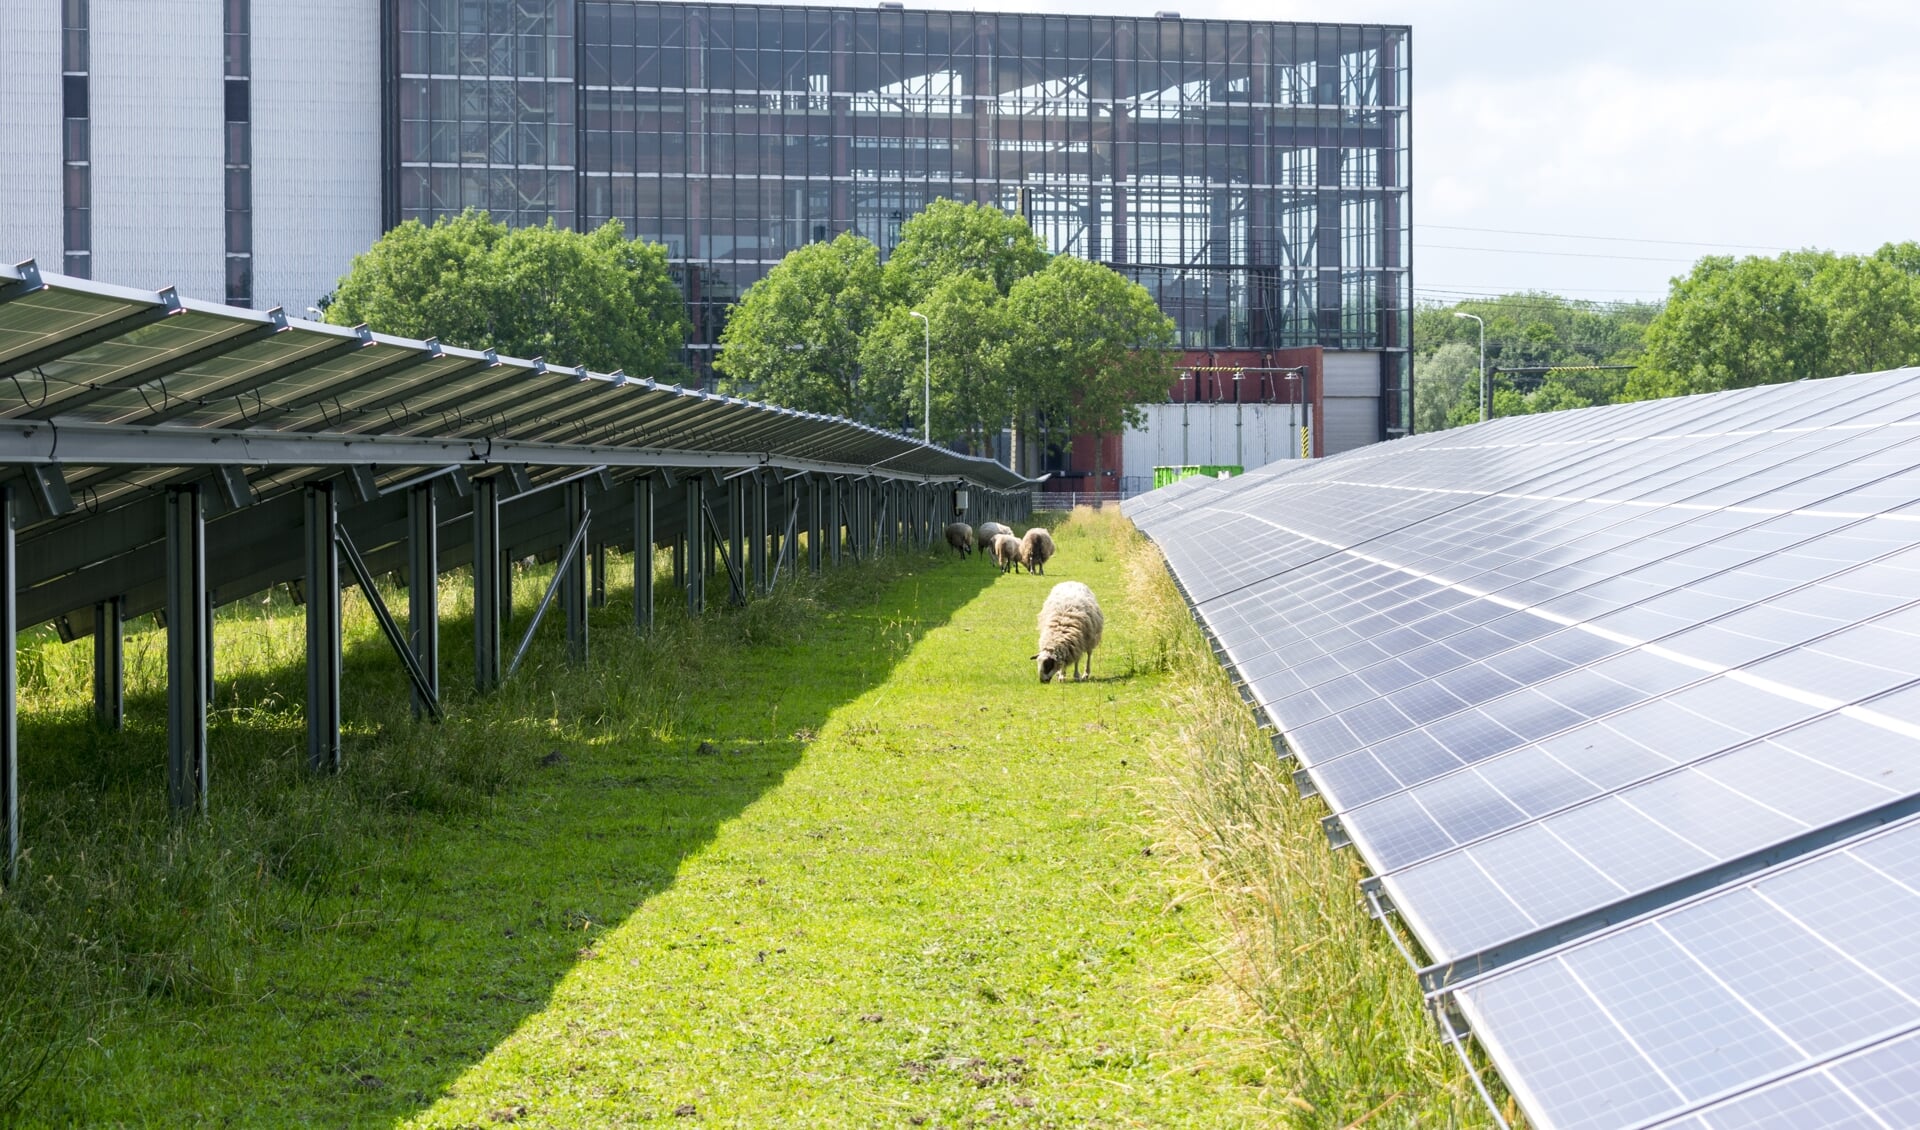 Net als bij de elektriciteitscentrale in Burgum (zie foto) moeten bij zonnepark Legauke schapen tussen en onder de panelen kunnen grazen.